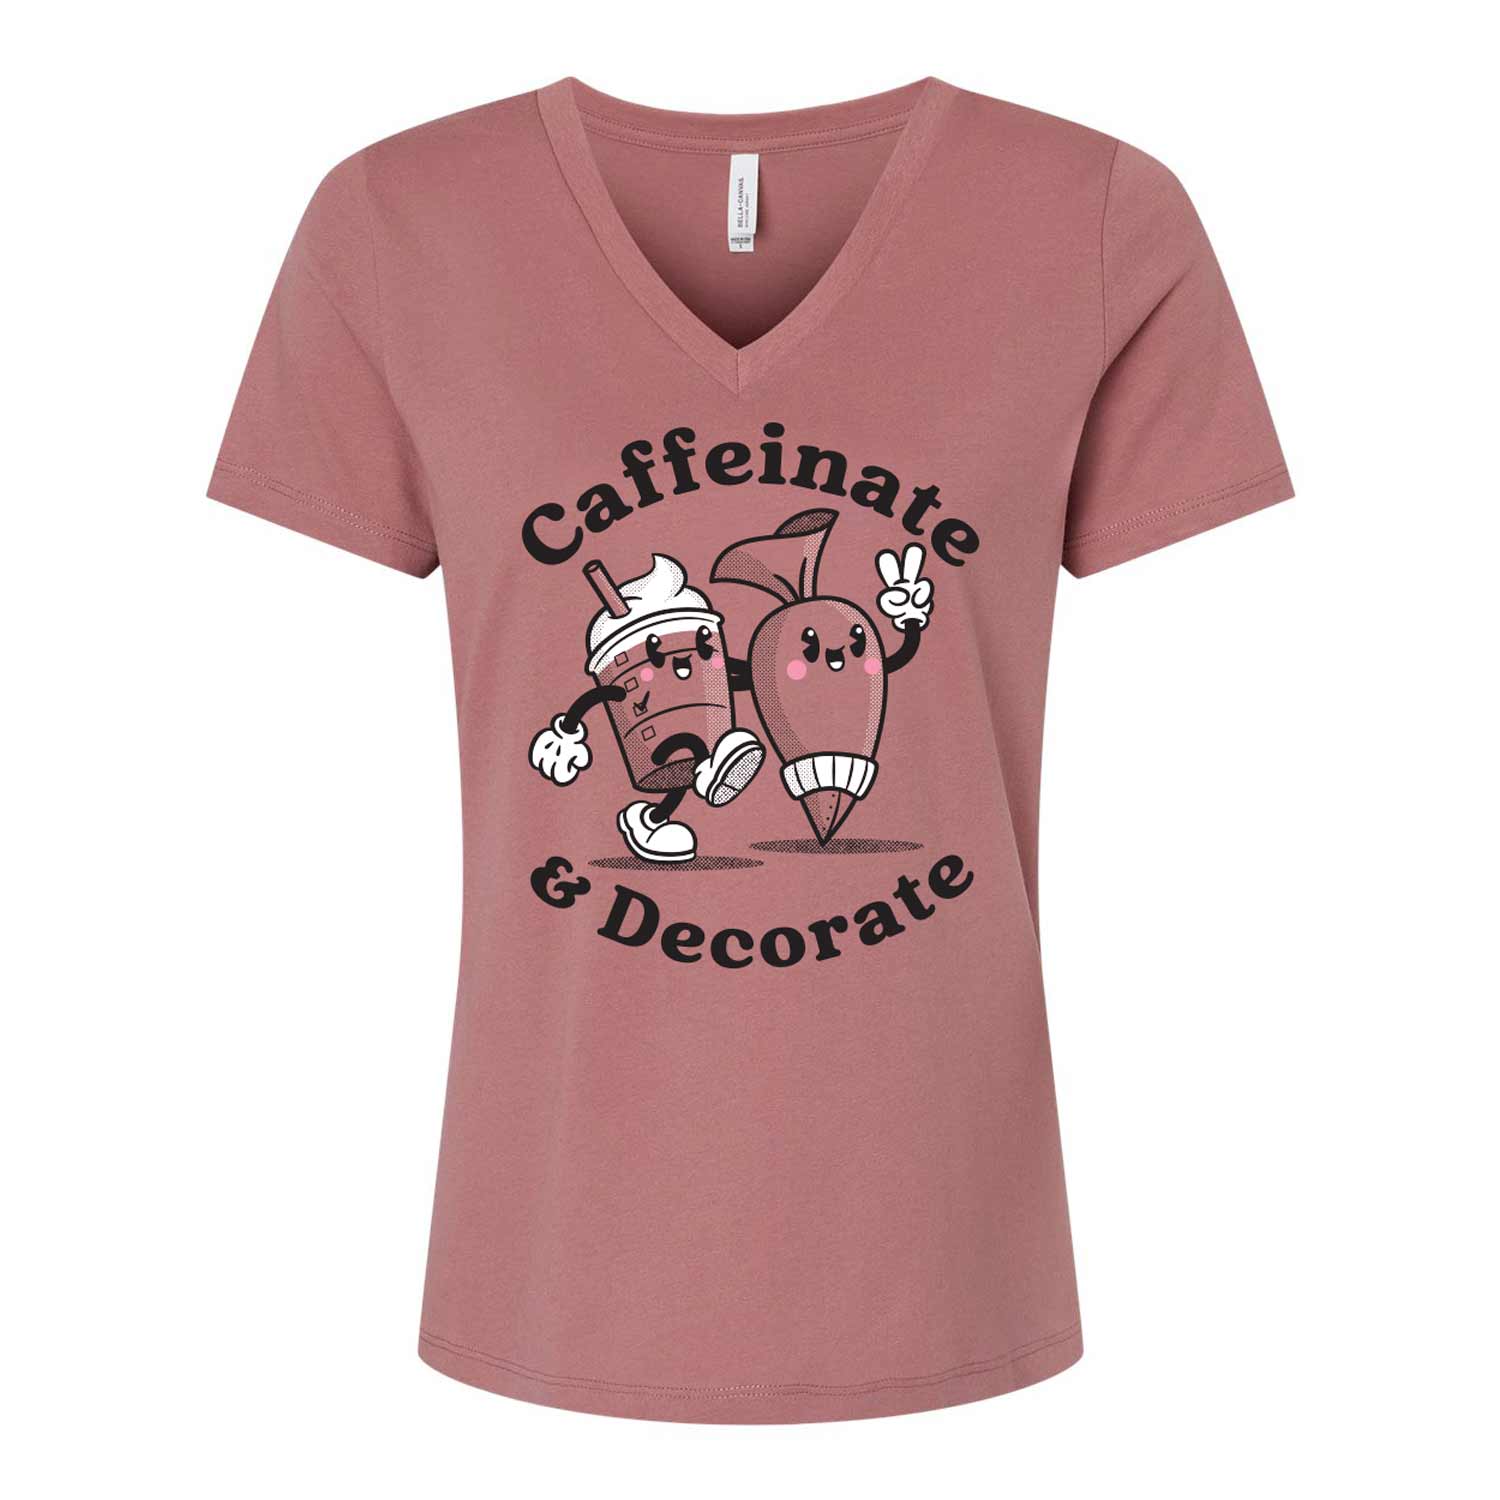 Caffeinate & Decorate Ladies V-Neck T-Shirt